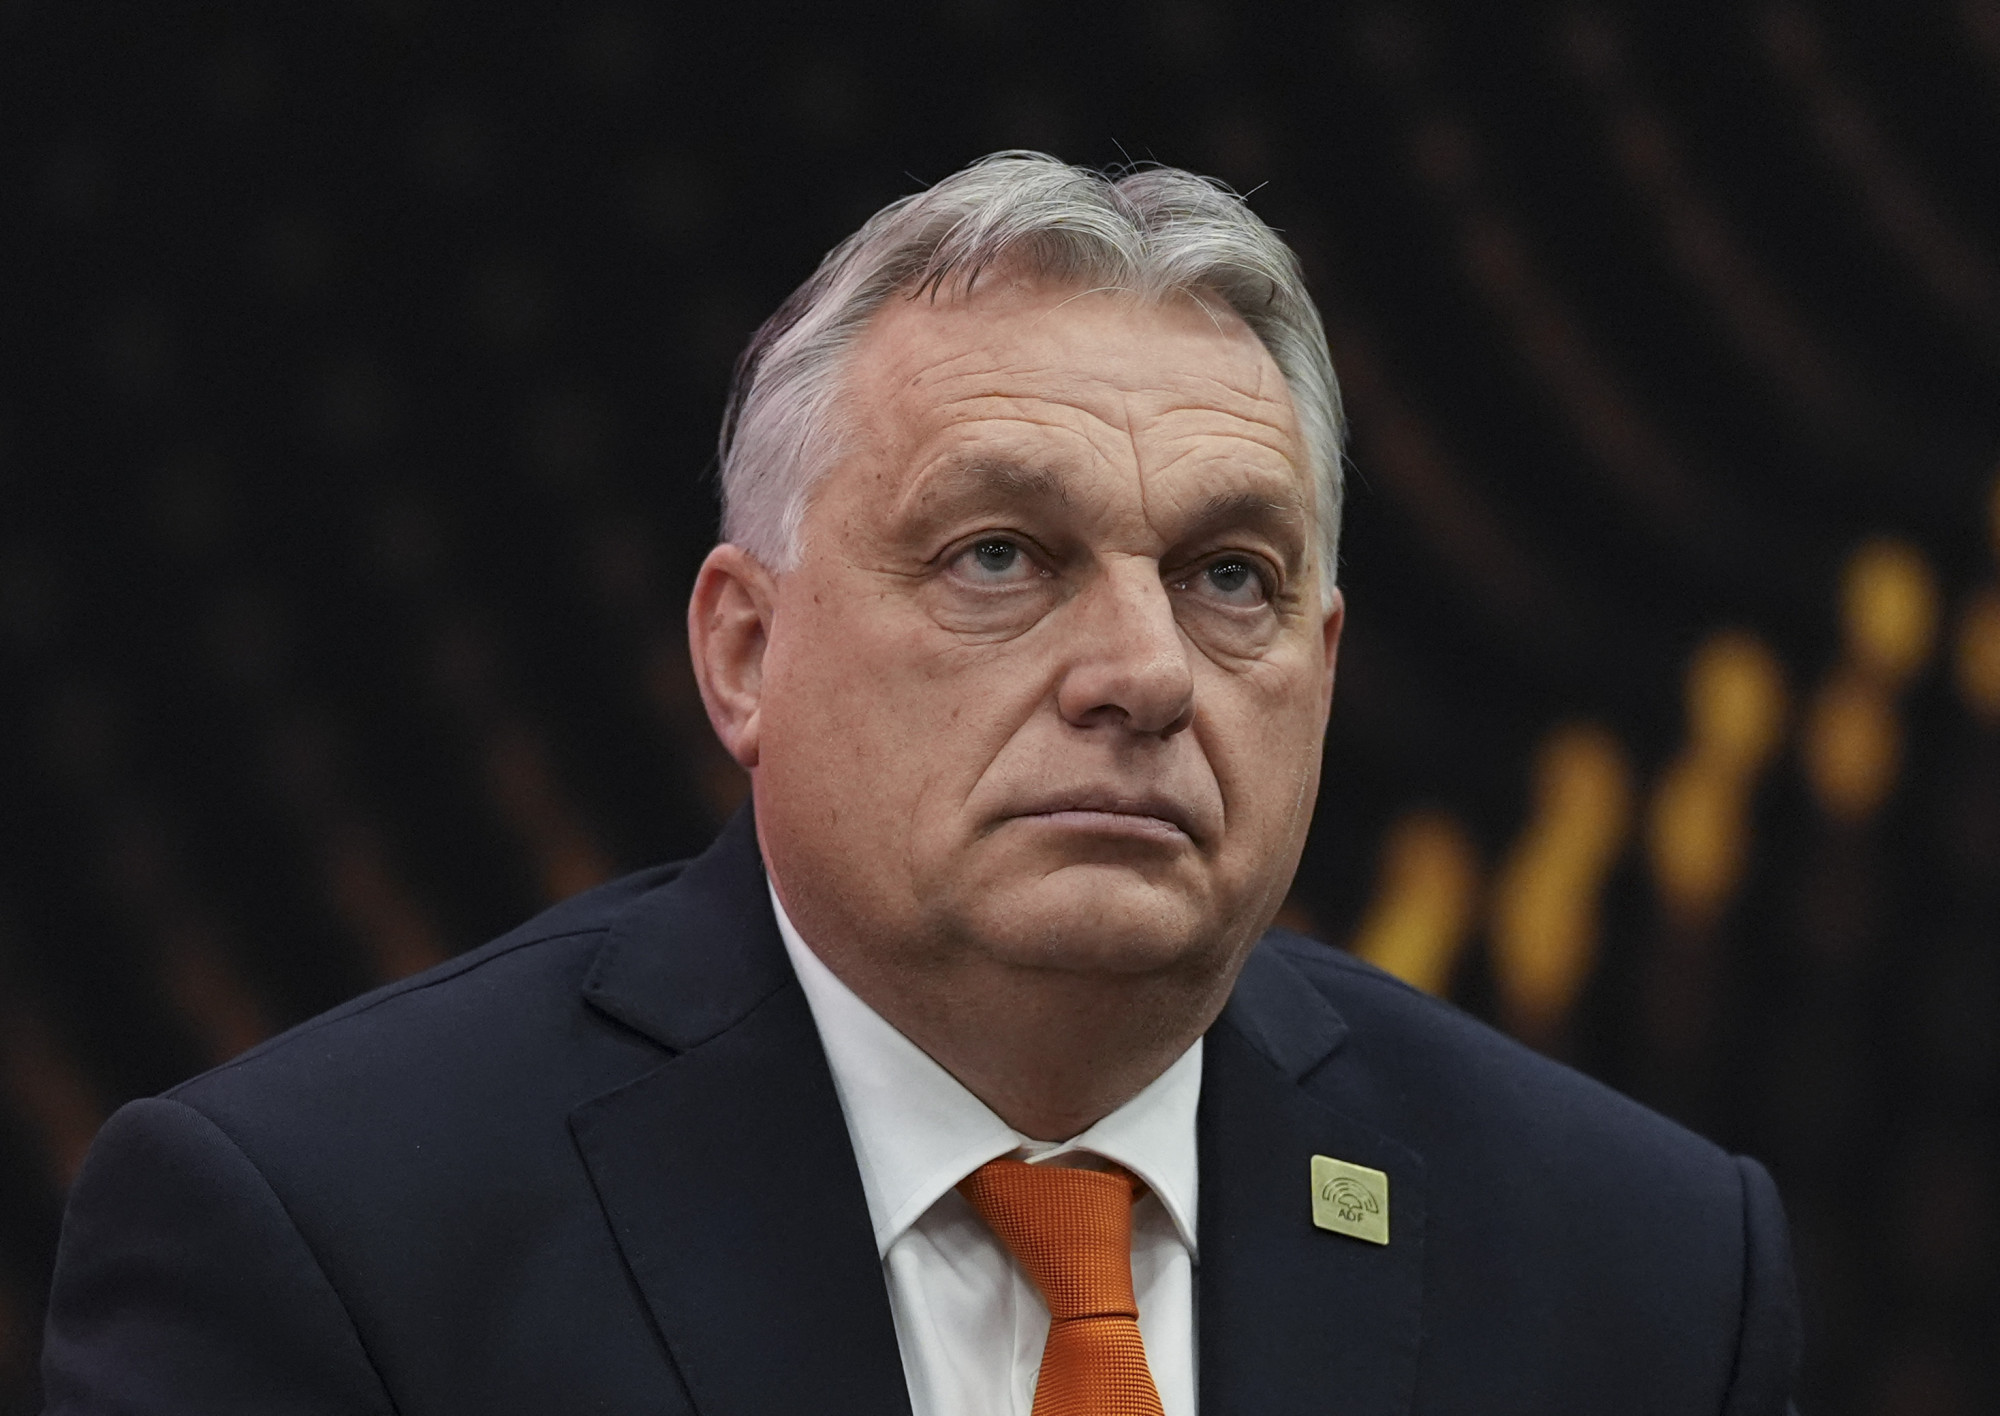 Bizonytalanná vált a Brüsszelbe tervezett konzervatív konferencia megtartása, ahol Orbán is felszólalna